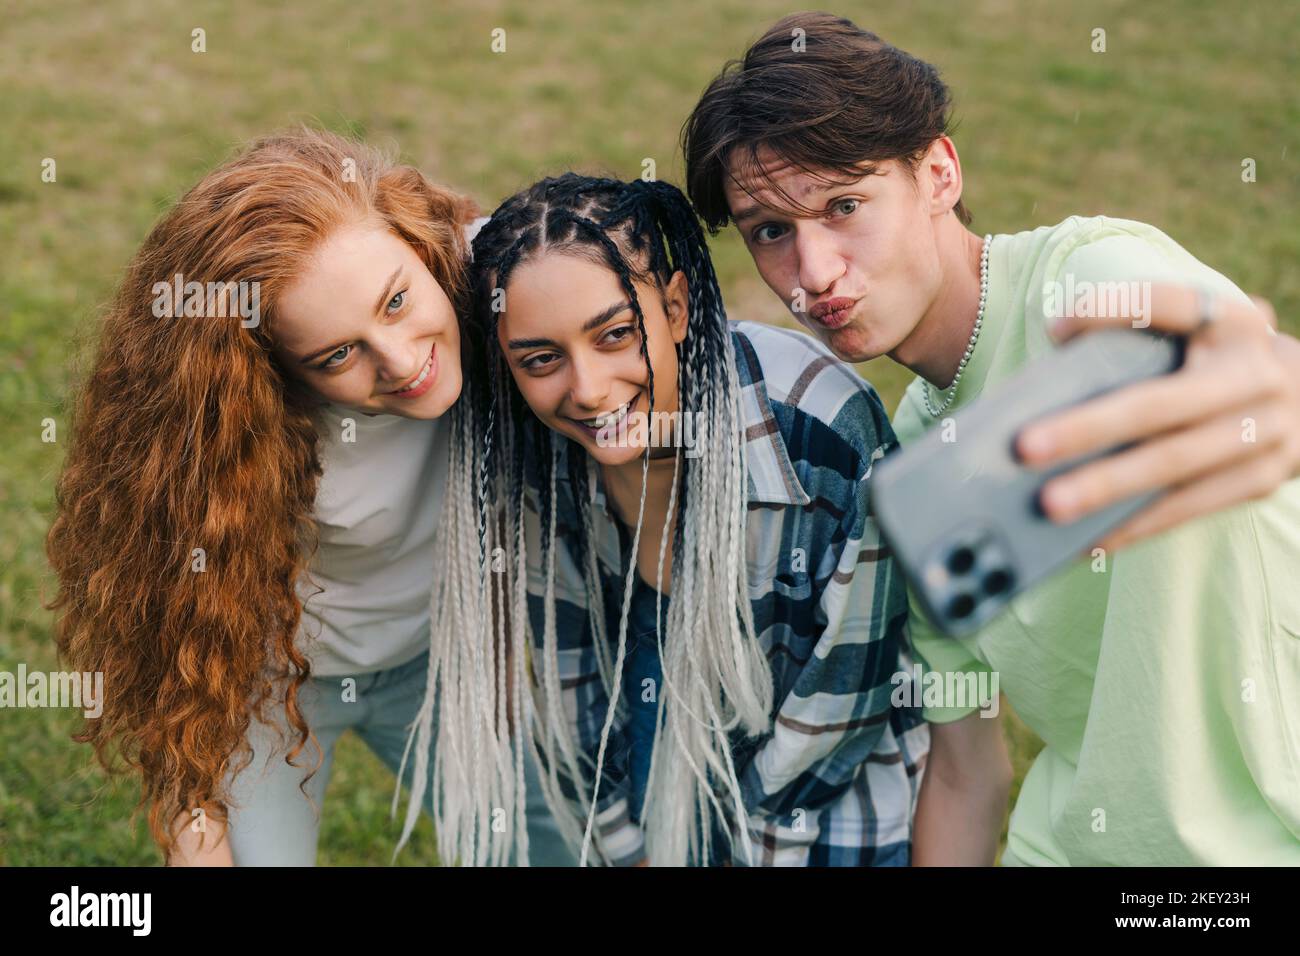 Drei junge, glücklich lächelnde kaukasische Teenager, die im Sommer Selfie im Park machen und verrückt werden und lachen. Sonnenuntergang Licht.Glückliche und positive Emotionen. Stockfoto